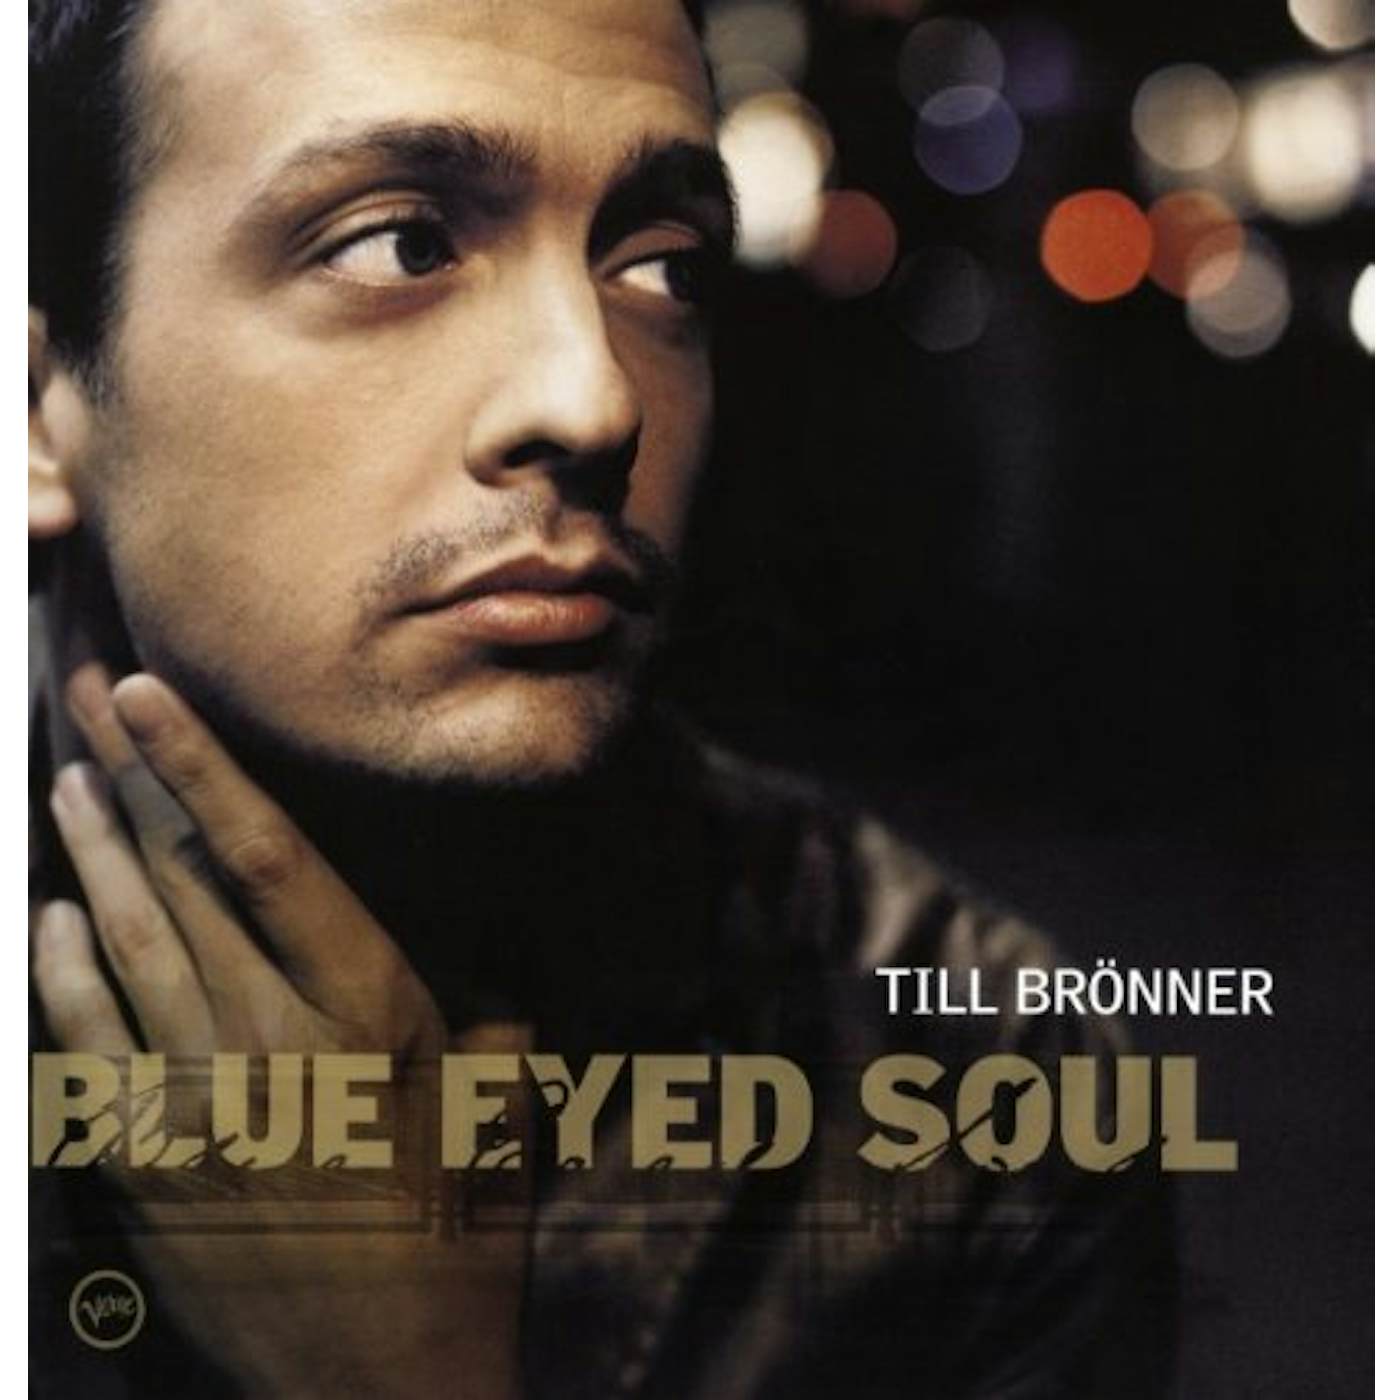 Till Brönner Blue Eyed Soul Vinyl Record